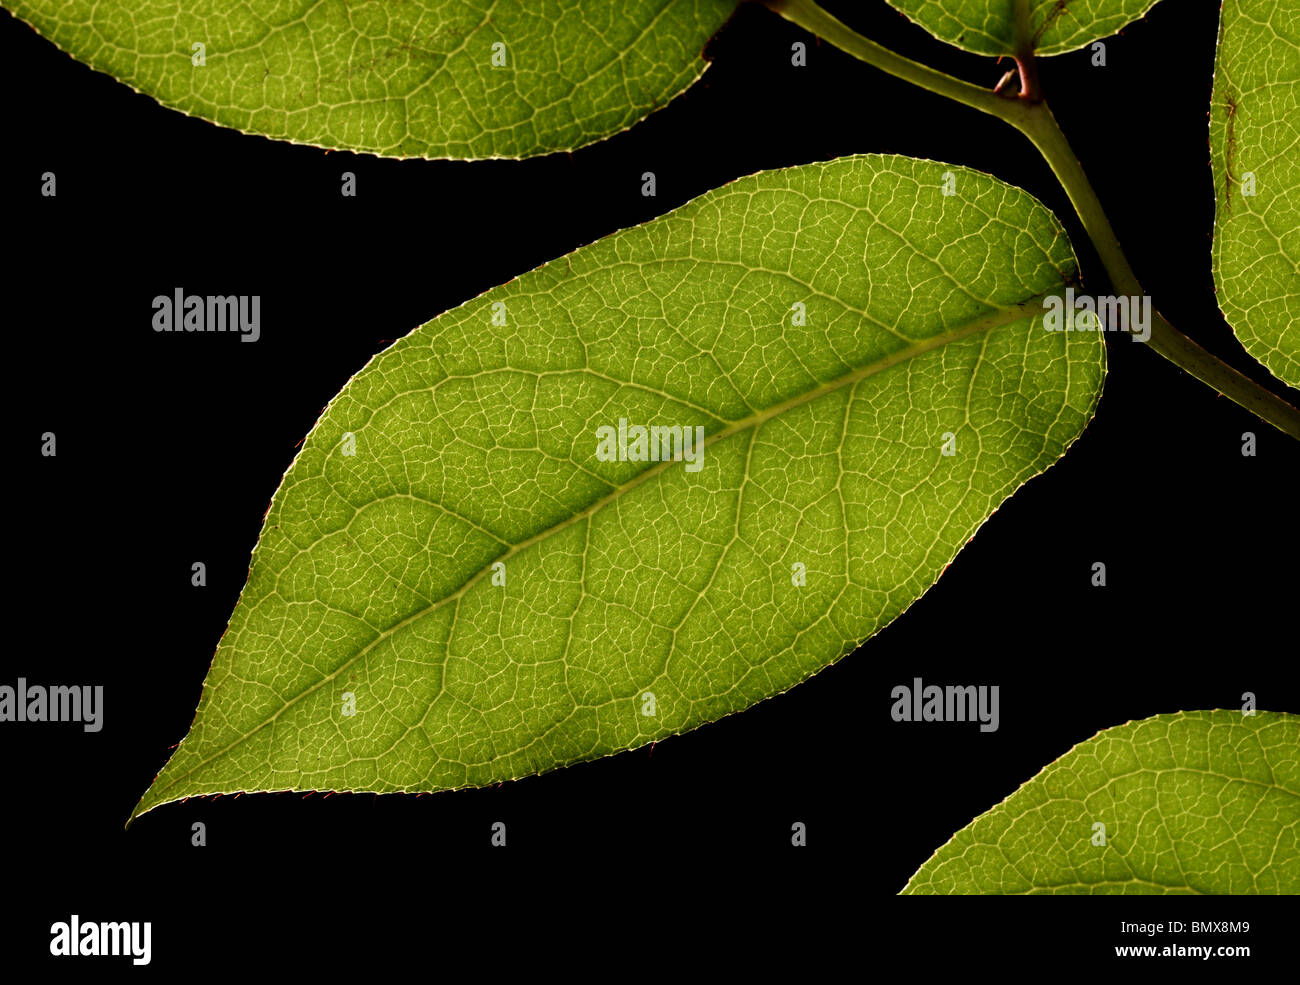 Las hojas de las plantas verdes en una sucursal, fondo negro Foto de stock